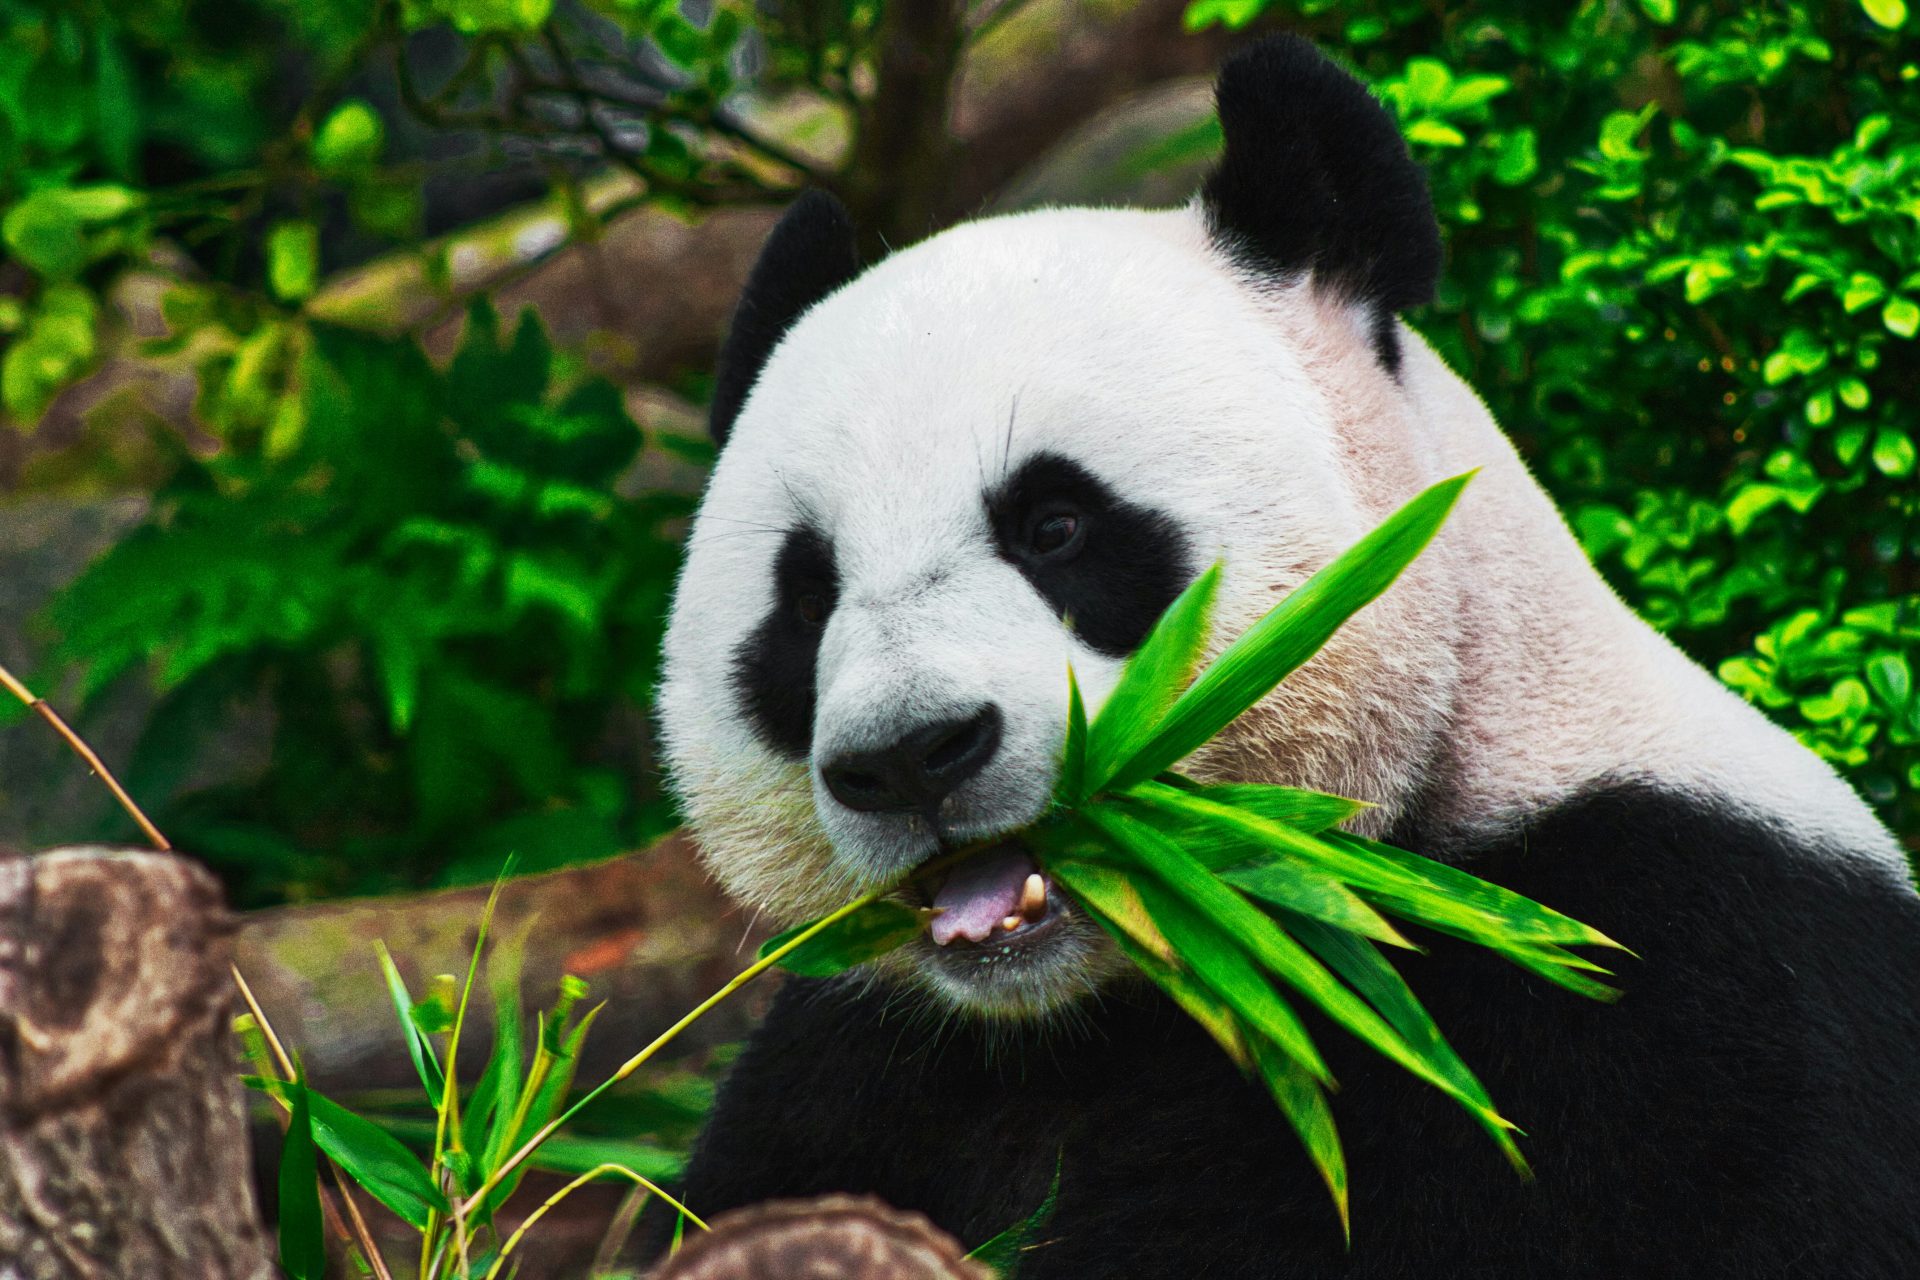 El desarrollo de infraestructura ha fragmentado las poblaciones de pandas